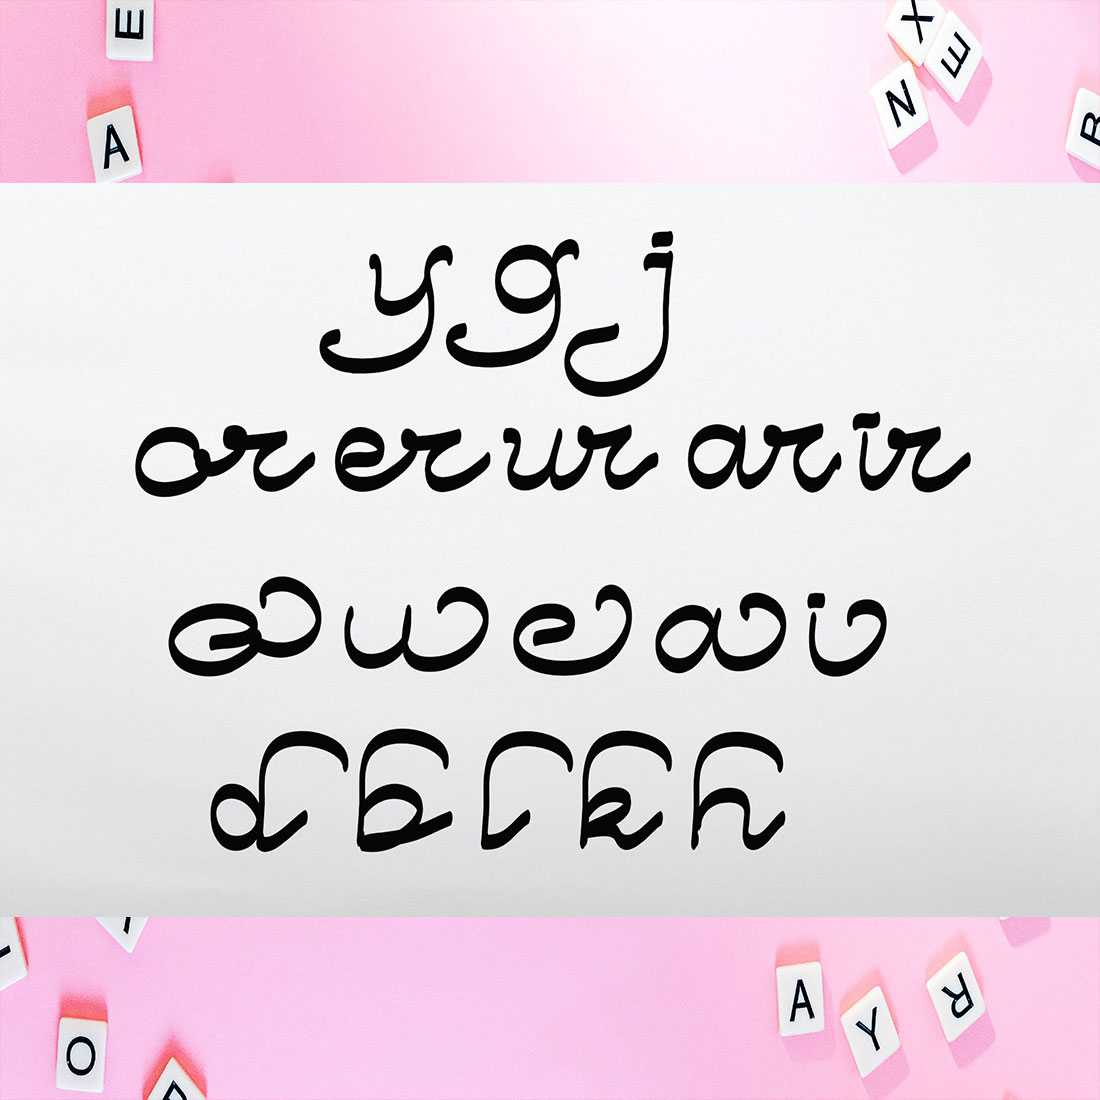 Image with text showcasing the amazing Thinki Lathing font.